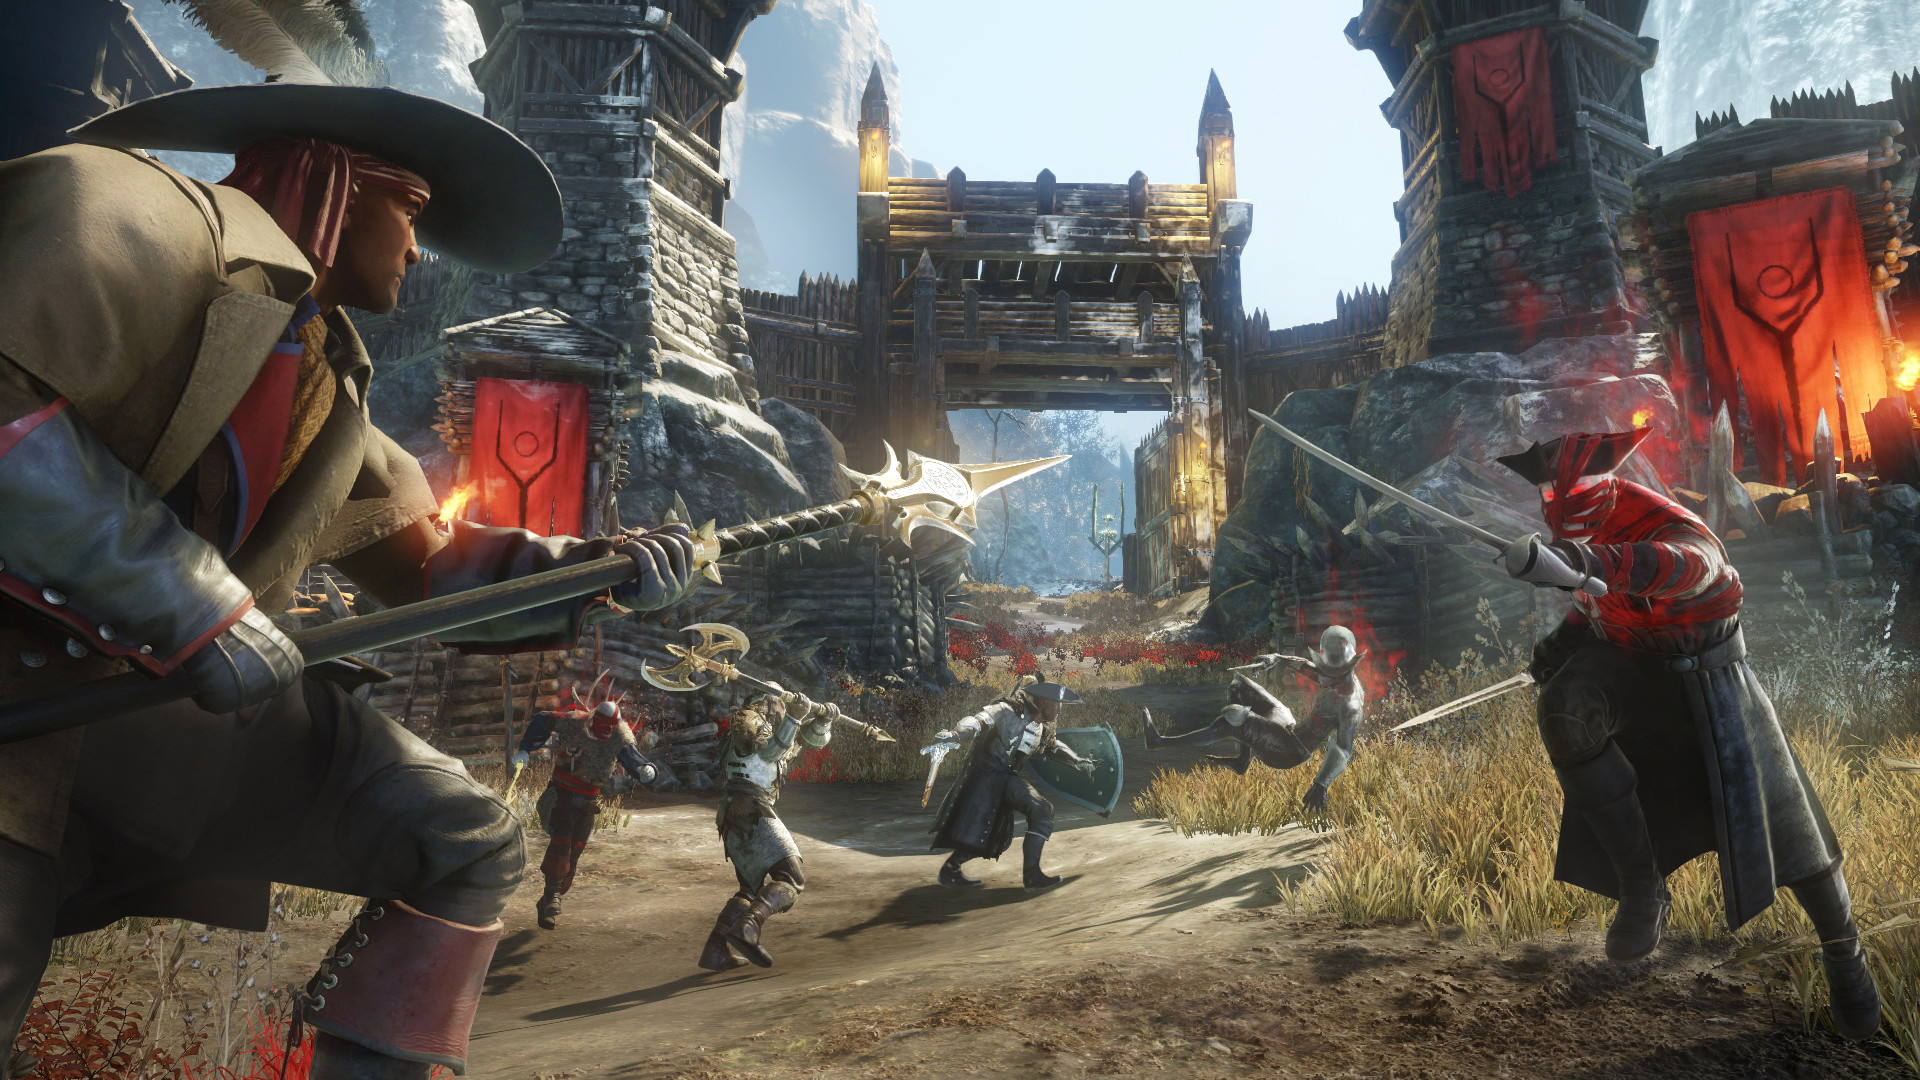 《新世界》官方公开四分钟实机演示 展示游戏战斗画面